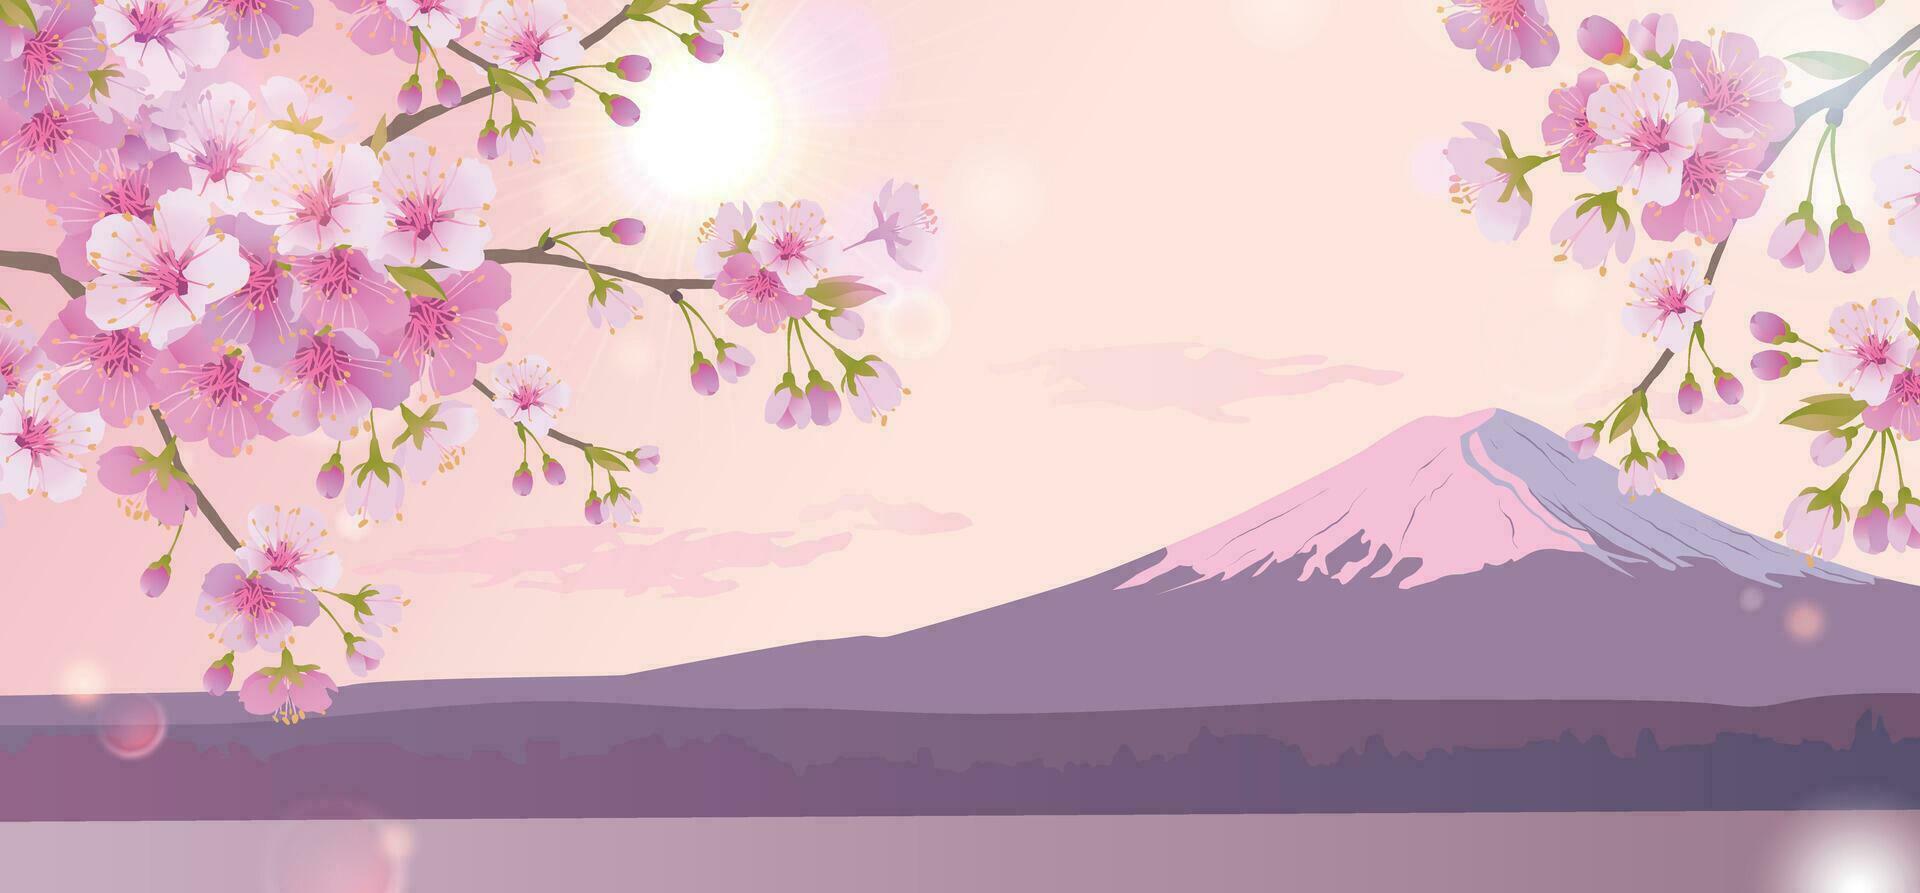 hell Morgen Landschaft mit Rosa Himmel. Geäst von Blühen Weiß Kirsche Bäume auf das Hintergrund von montieren Fuji. traditionell japanisch Festival Hanami Kirsche blühen im früh Frühling. eben Illustration vektor